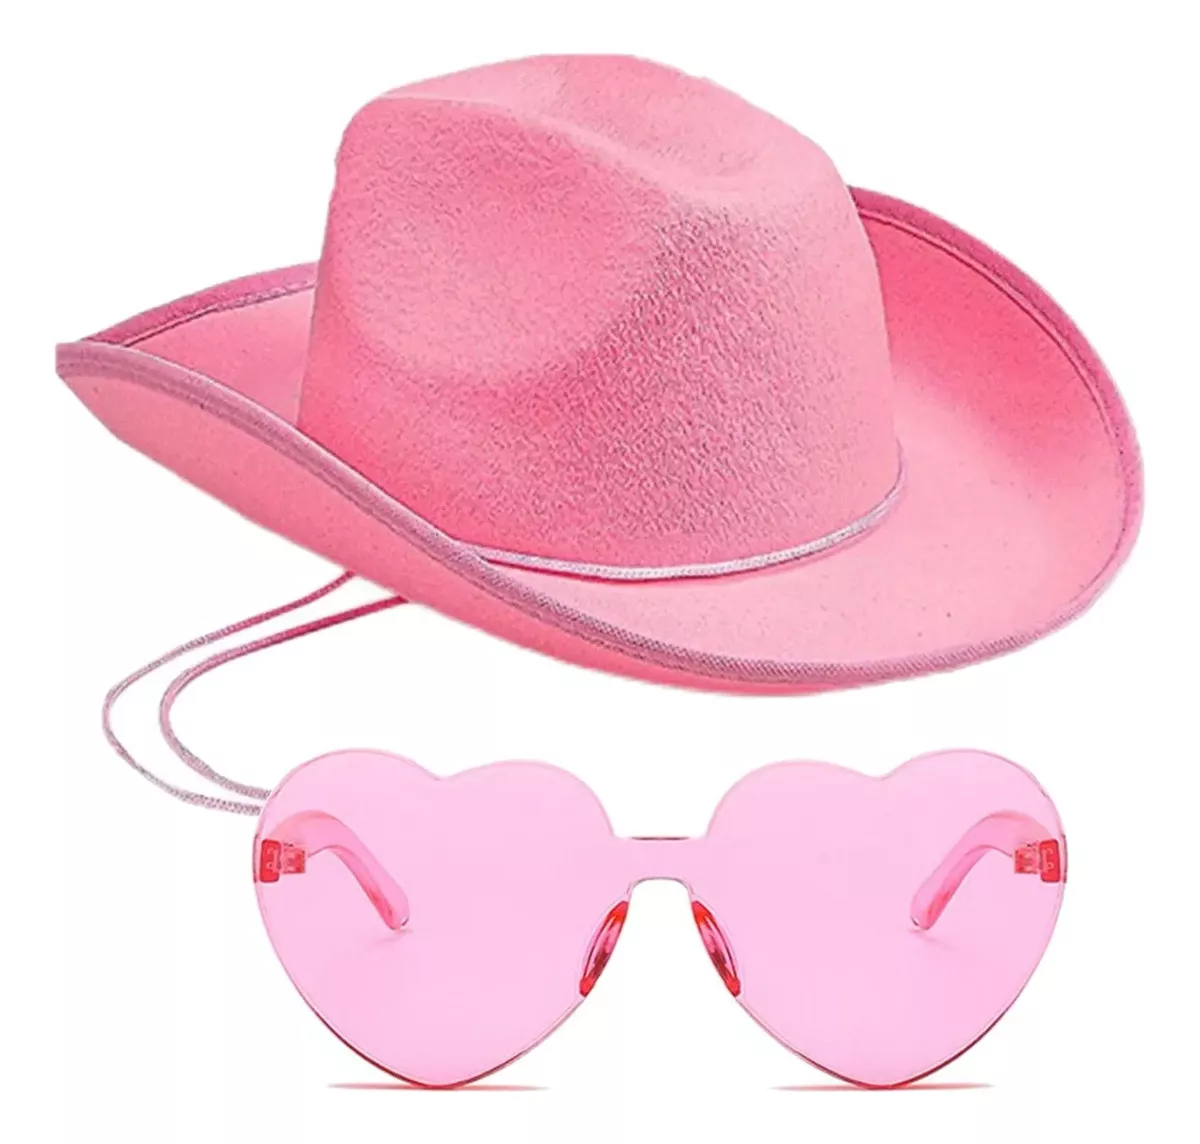 Primeira imagem para pesquisa de chapeu cowboy rosa